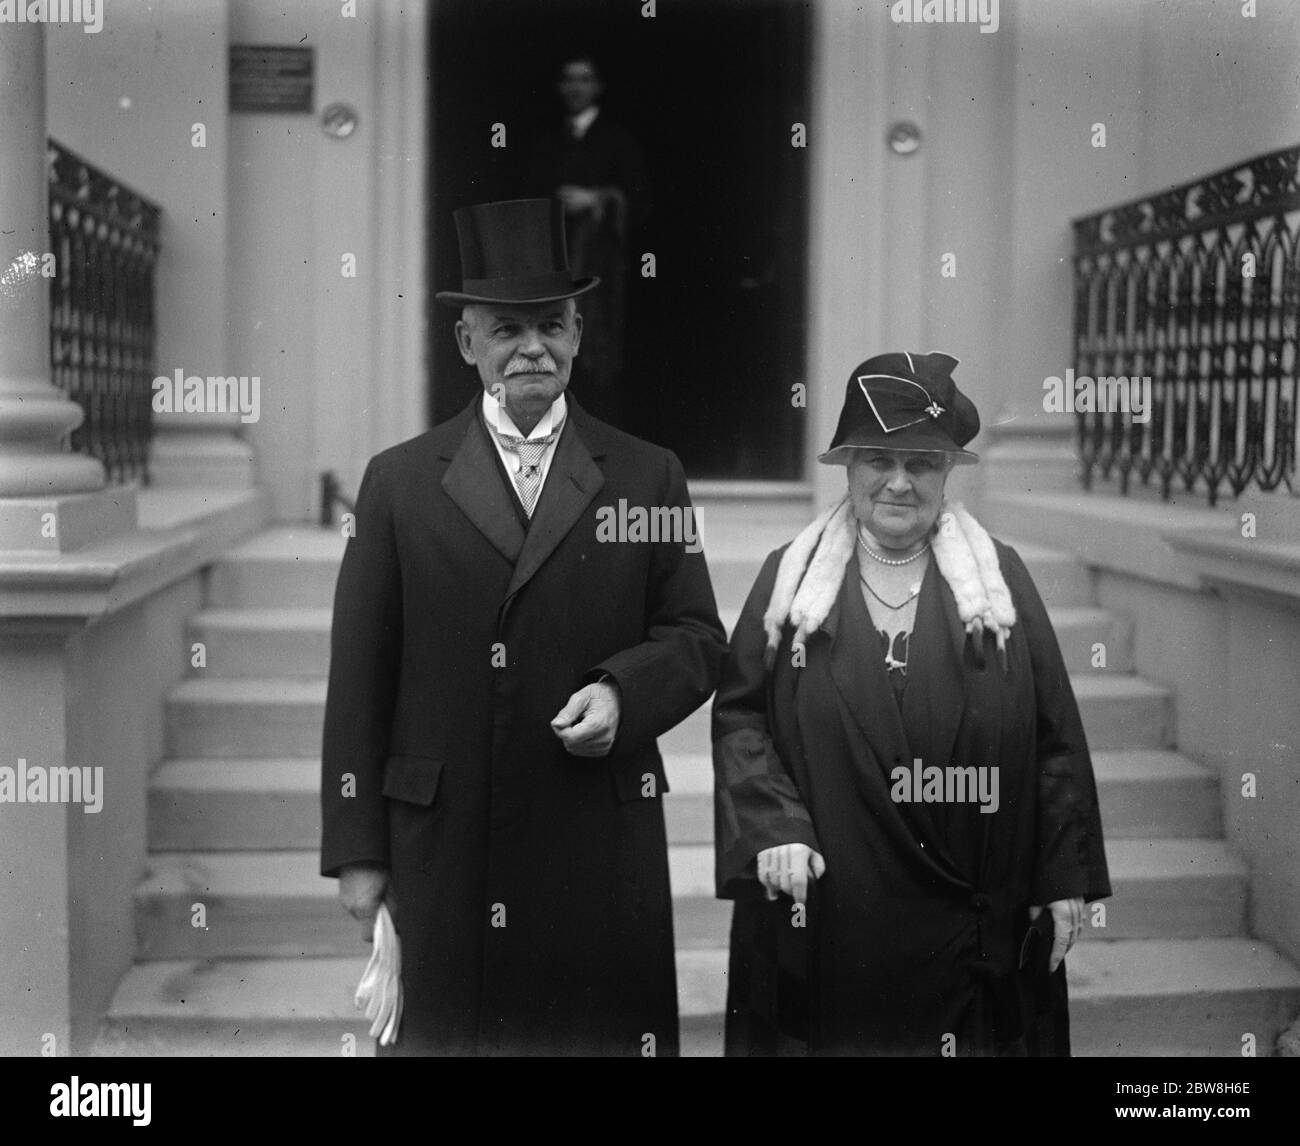 Saluto dell'Ambasciatore tedesco al Re e alla Regina . L'ambasciatore tedesco Friedrich Sthamer lascia l'ambasciata tedesca con la moglie . 1 ottobre 1930 Foto Stock